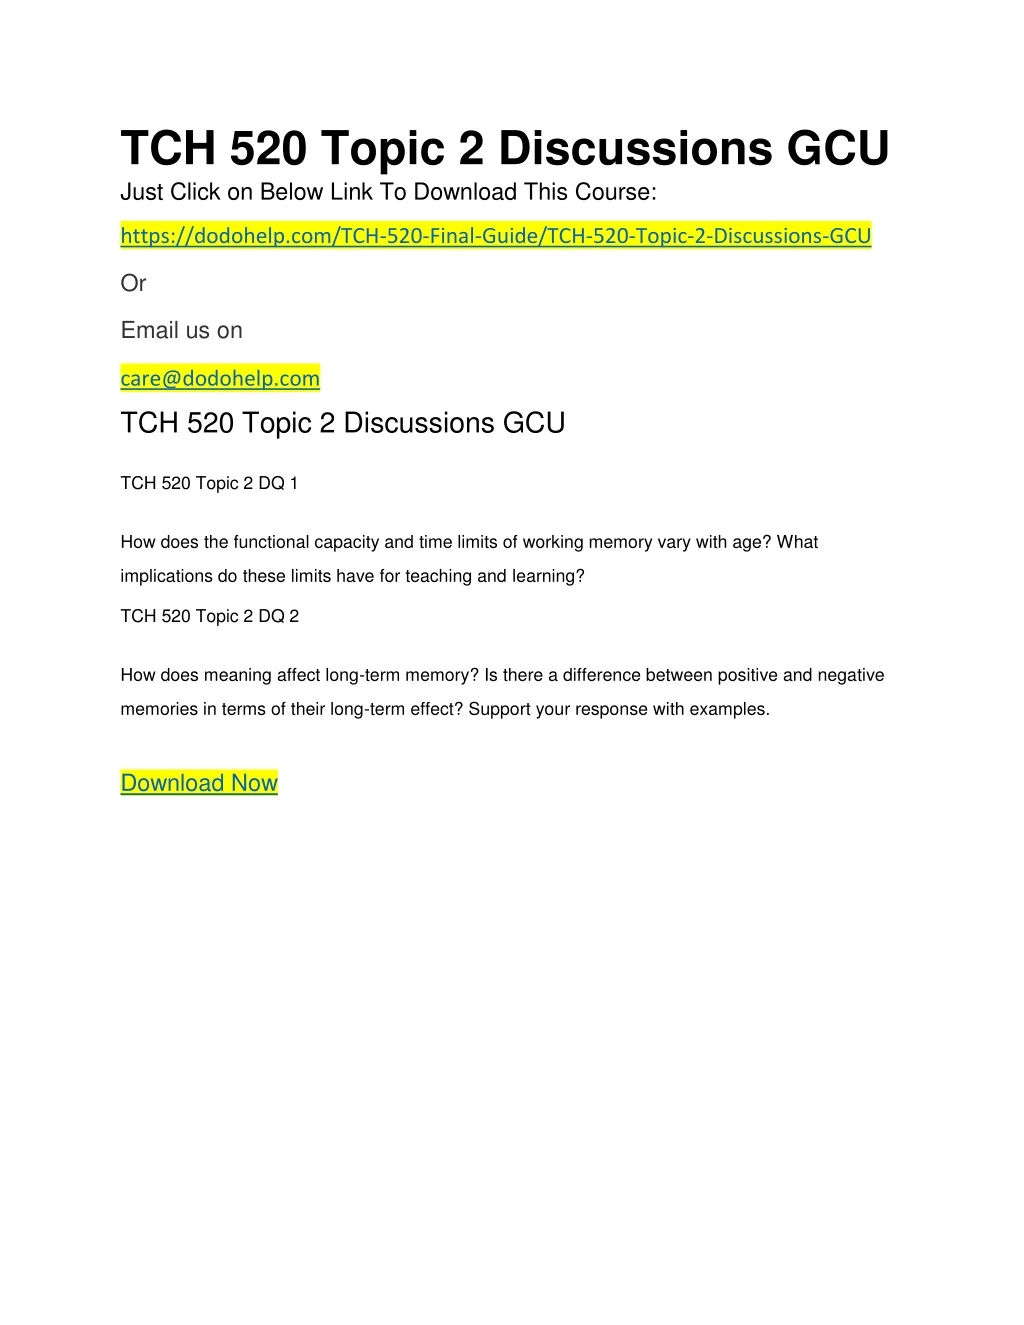 tch 520 topic 2 discussions gcu just click